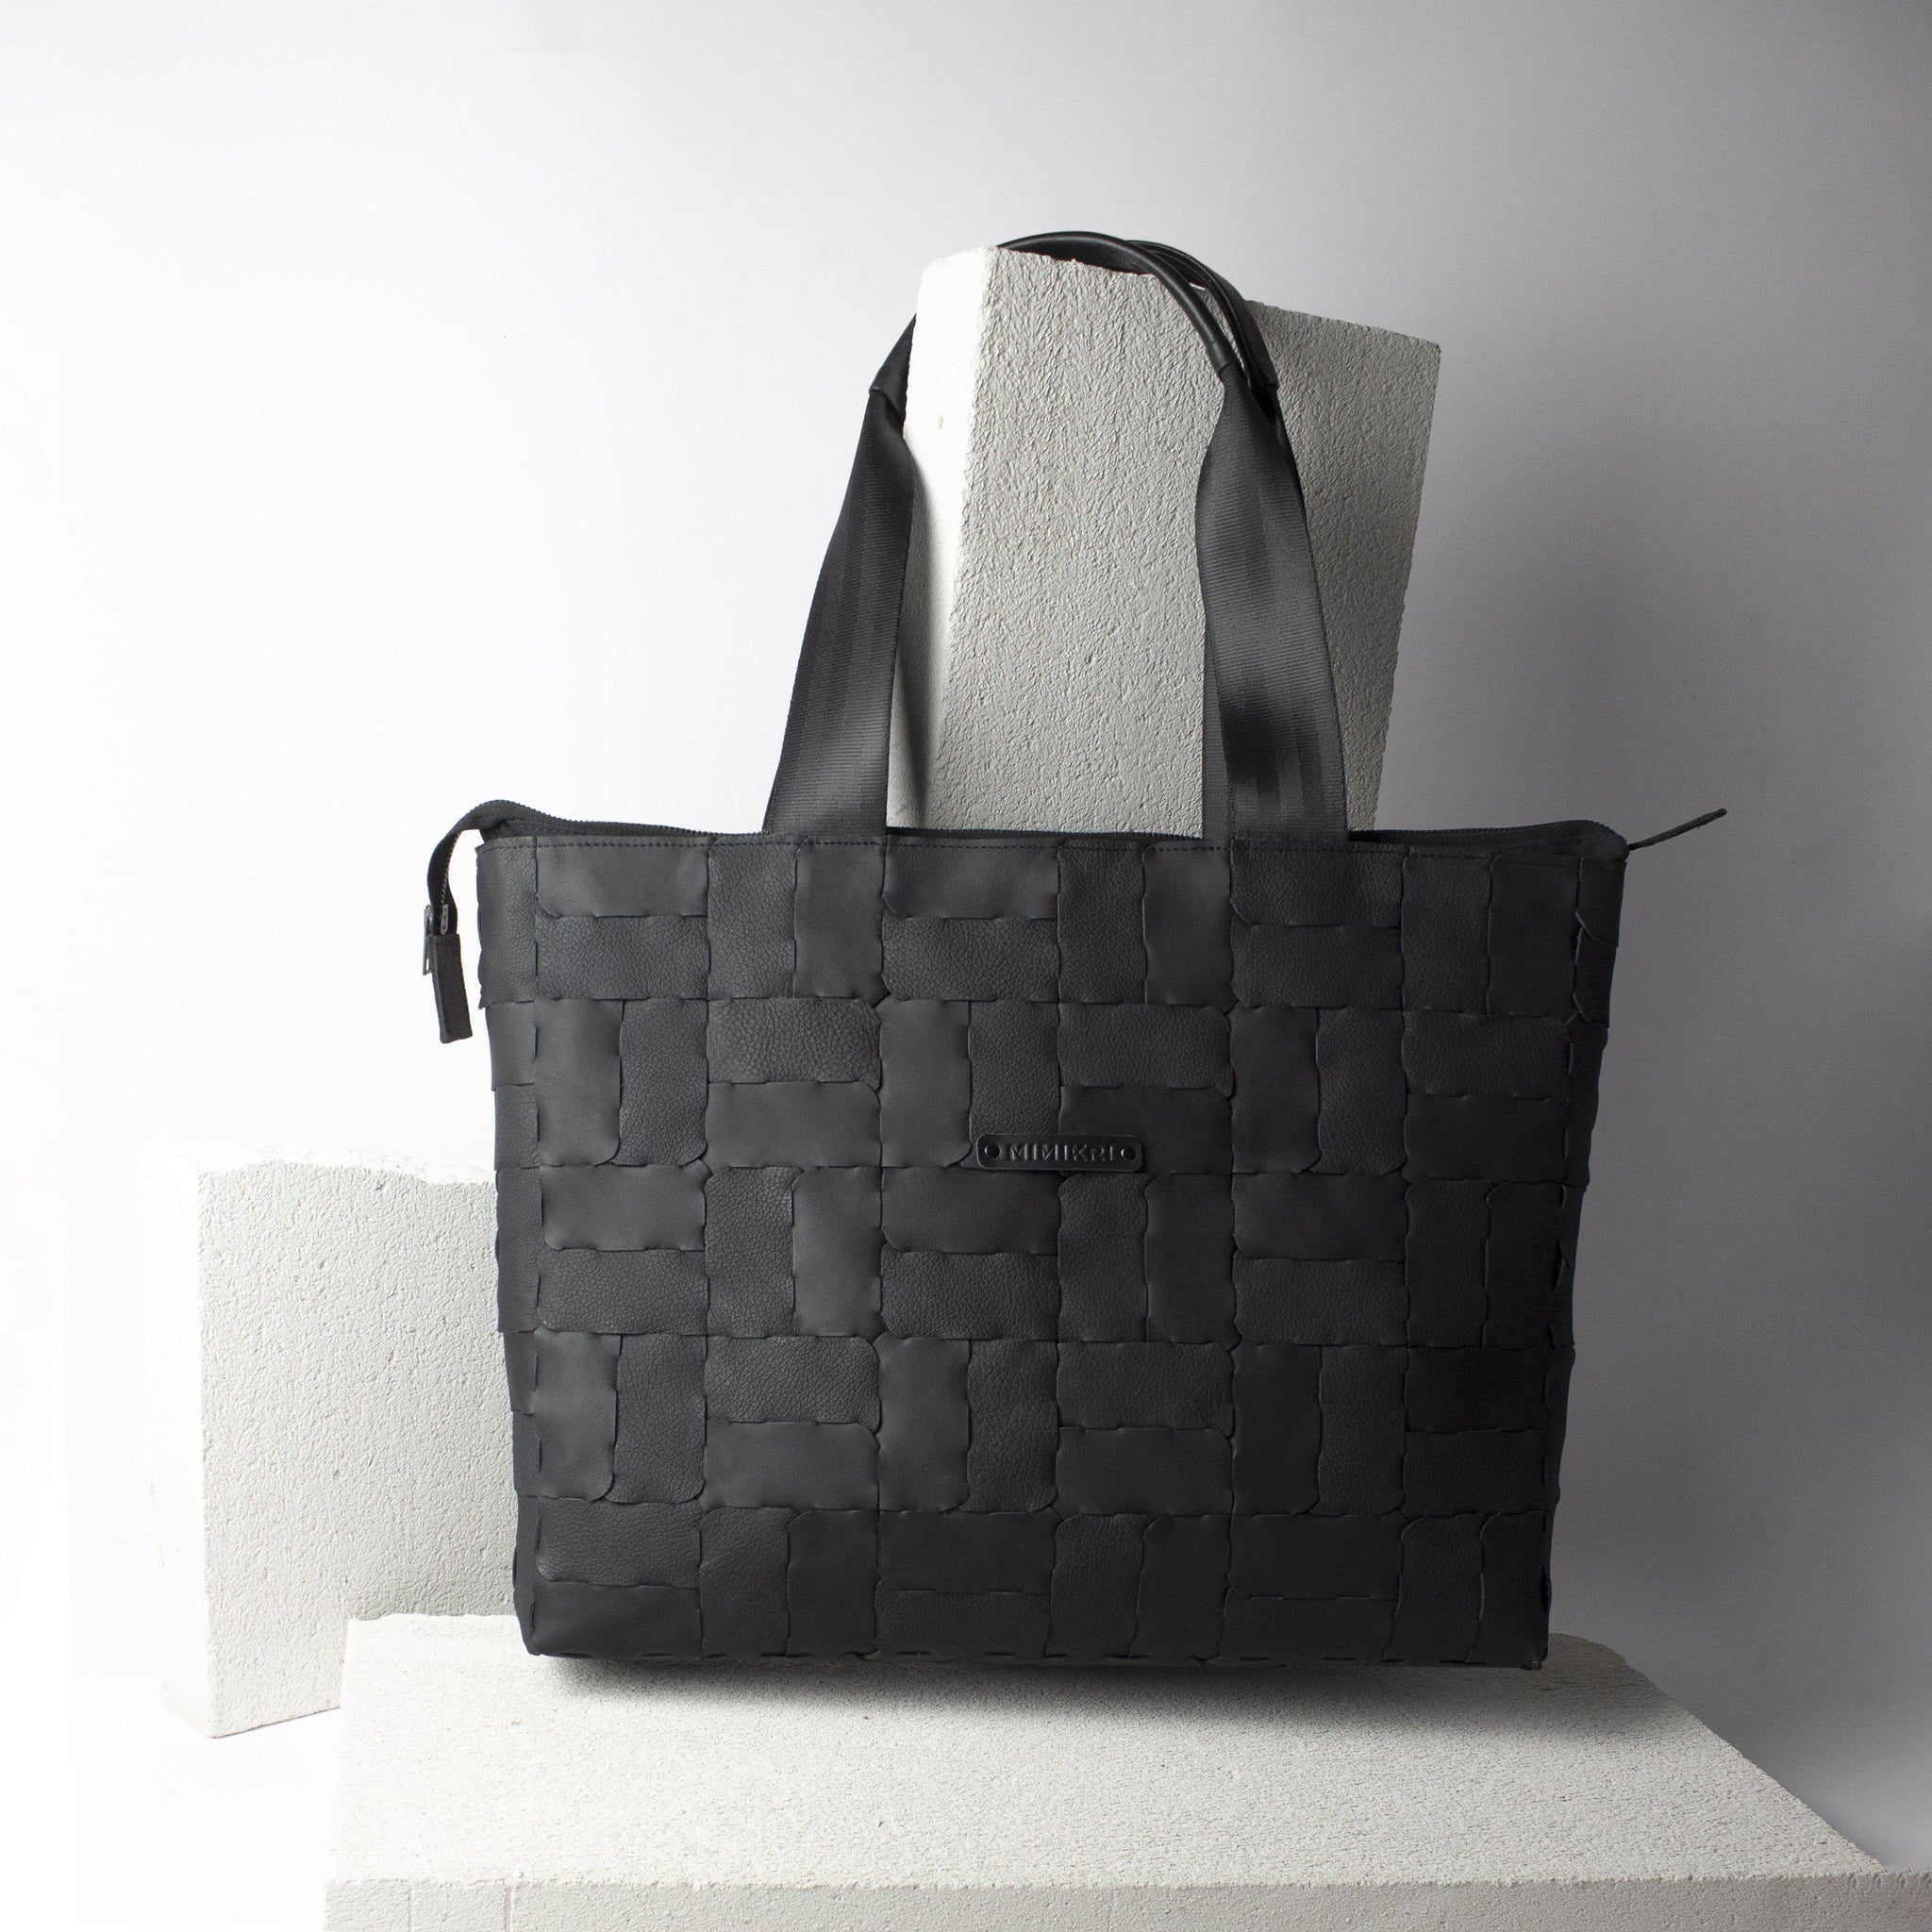 Designer shopper genuine leather / black recycled leather tote bag-designer, designer bag, geometric, hand_painted, handbag, leather bag, modular shopper, shoulder bag-Mimikri